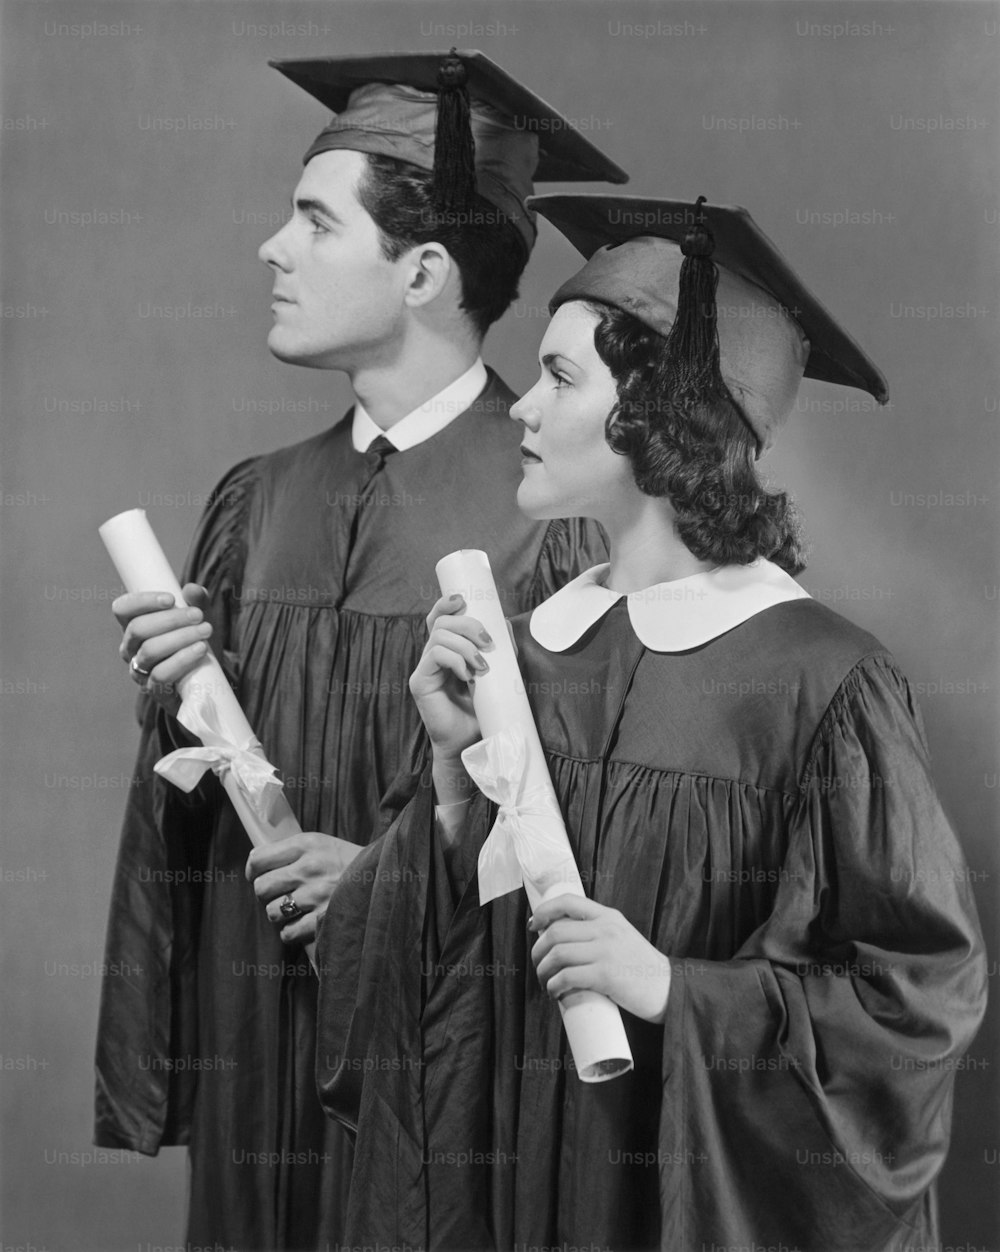 ESTADOS UNIDOS - CIRCA 1950s: Retrato de graduados de la escuela secundaria.